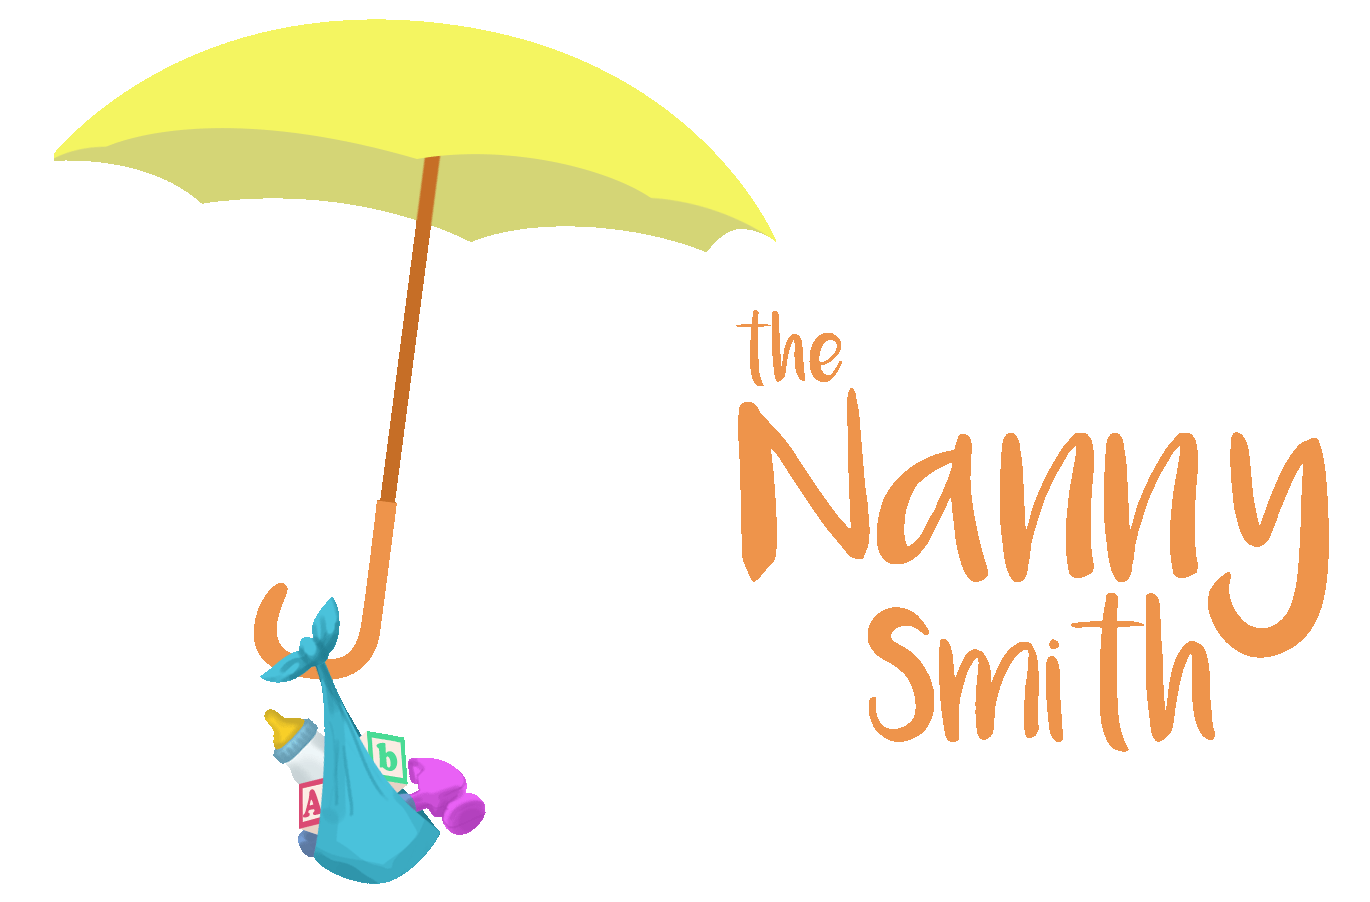 The Nanny Smith